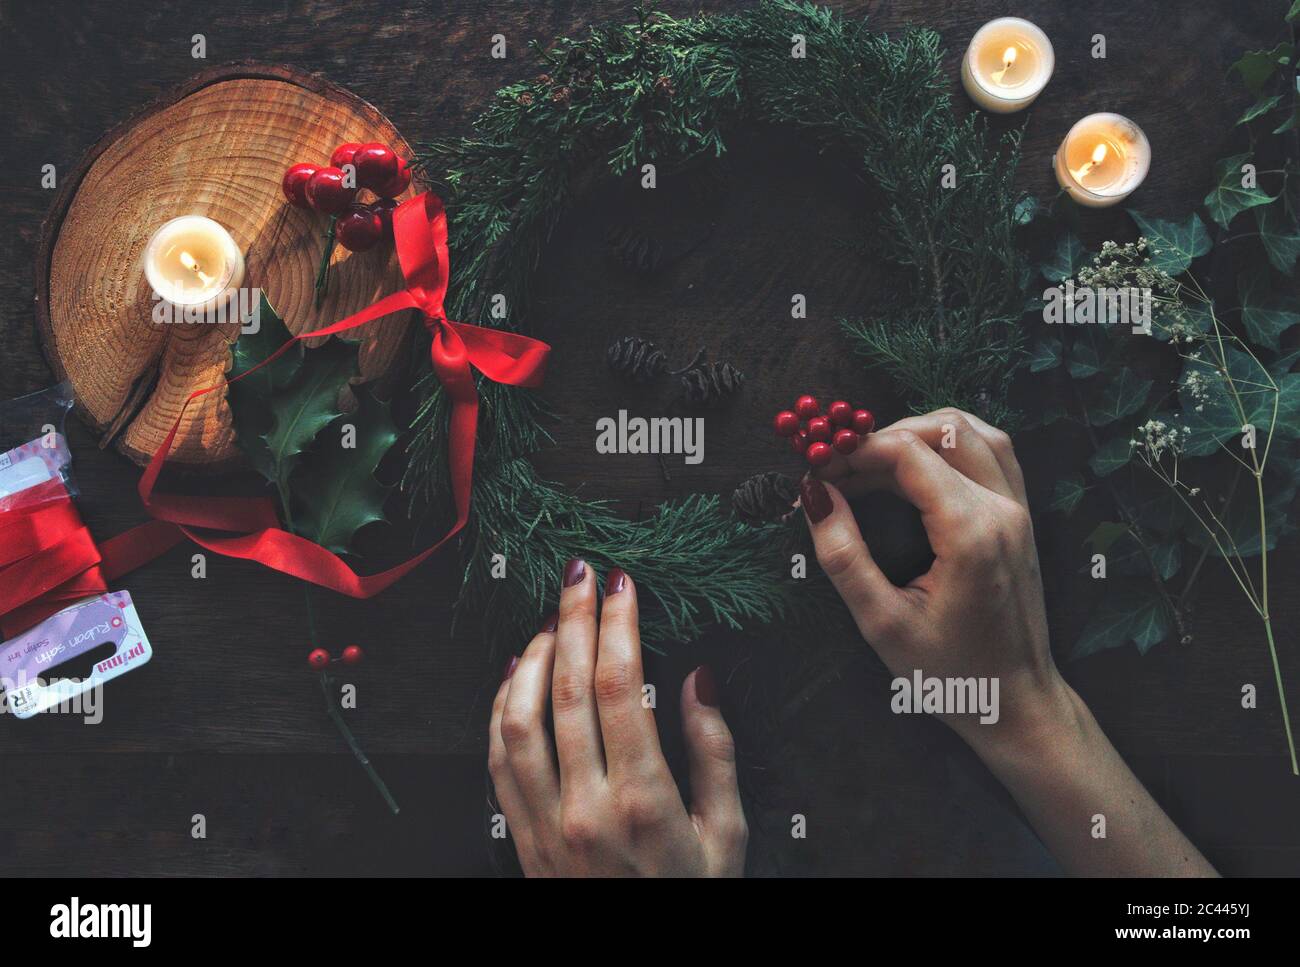 Femme mains faisant bricoler Yule solstice d'hiver (Noël) couronne de branches d'arbre à feuilles persistantes de cèdre. Placer les baies de houx dans elle. Pose à plat Banque D'Images